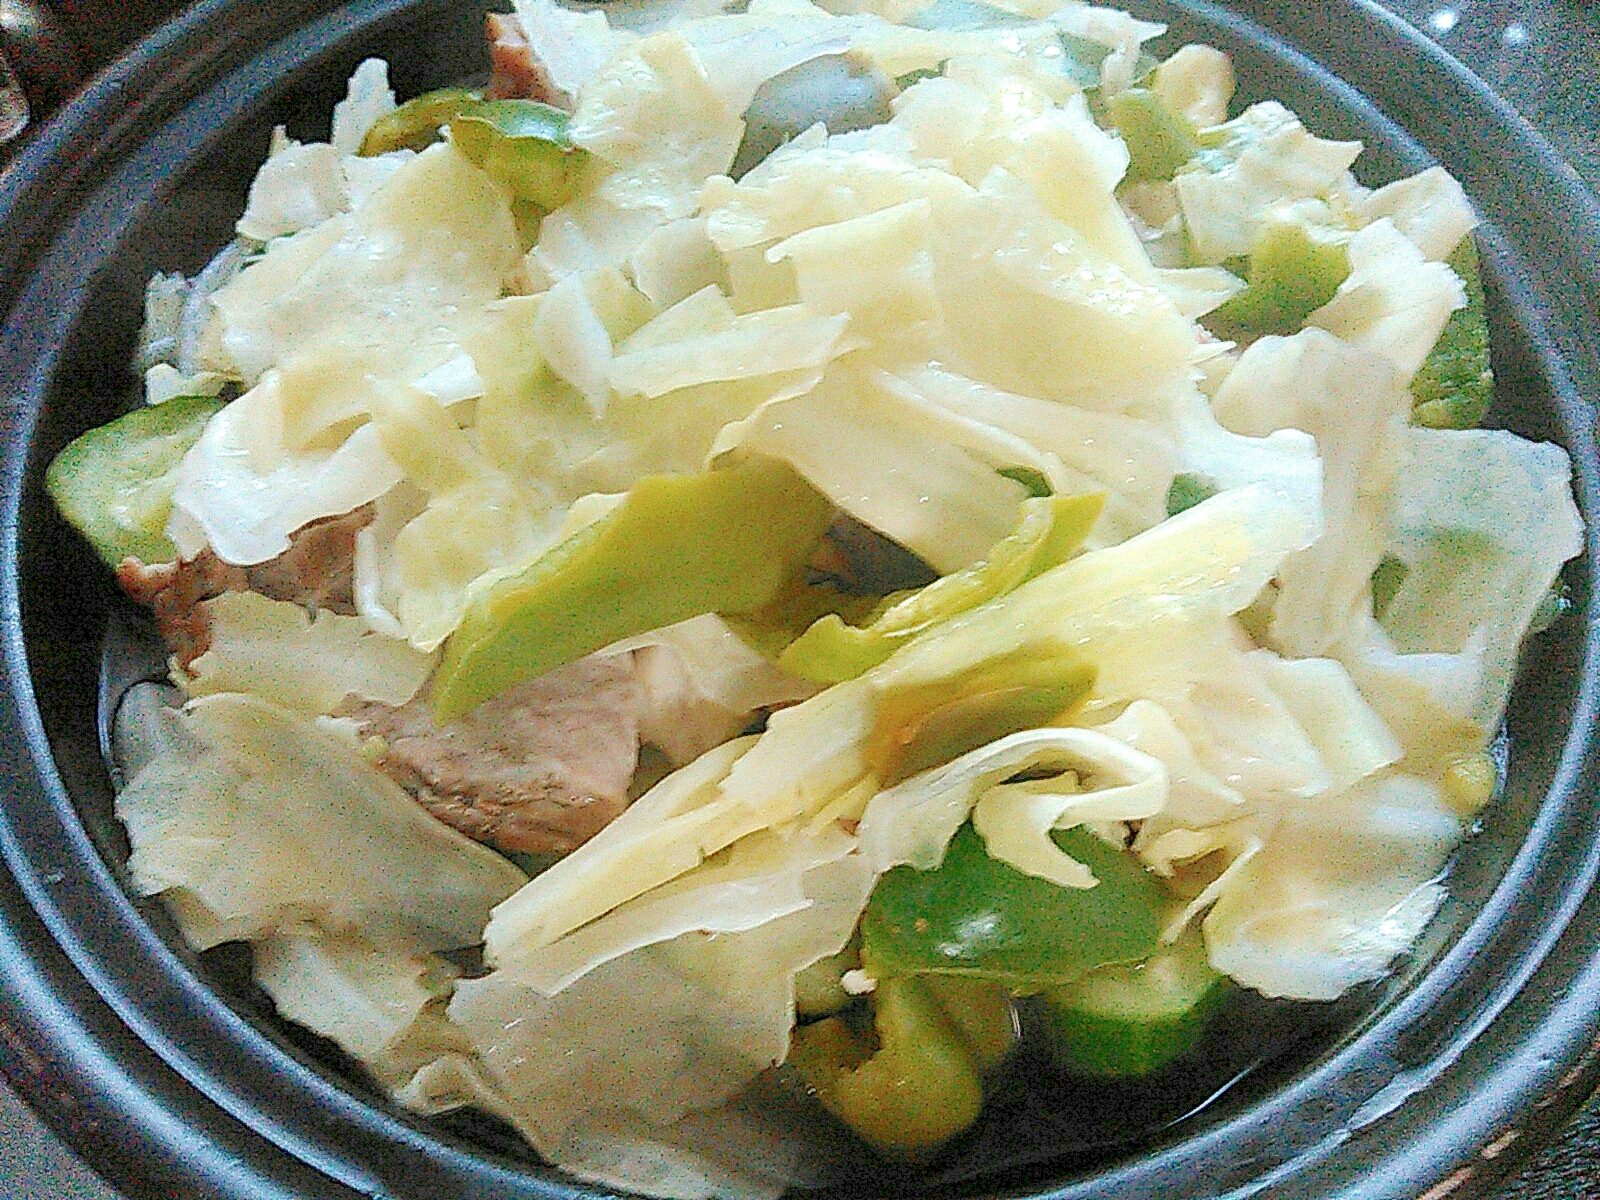 キャベツきゅうりエリンギ・ピーマンの温サラダ